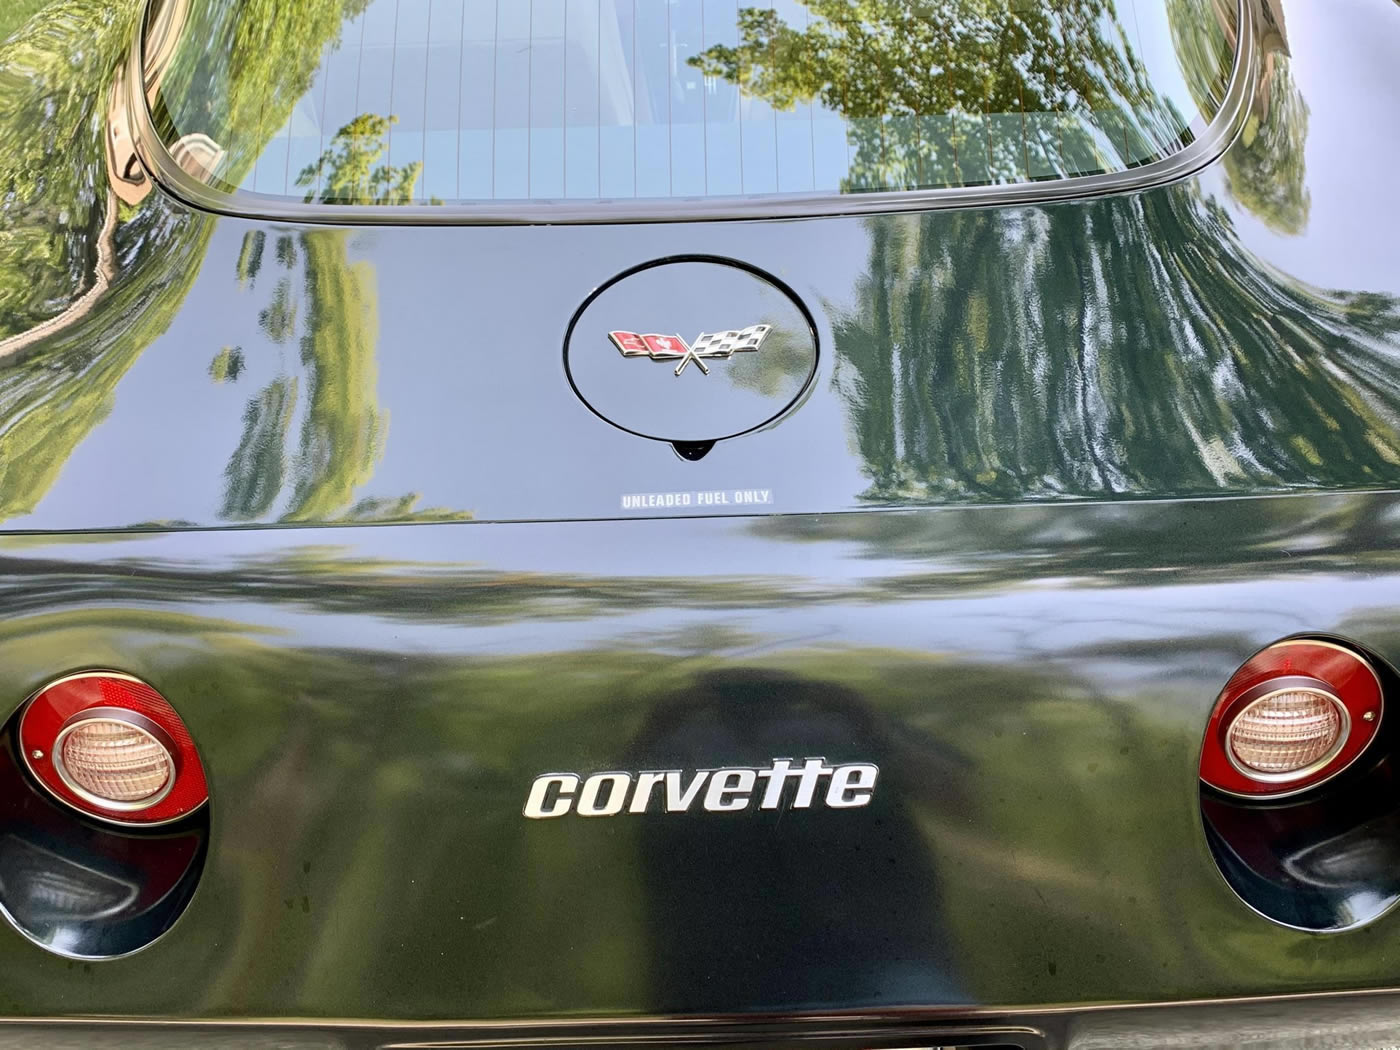 1979 Corvette in Corvette Dark Green